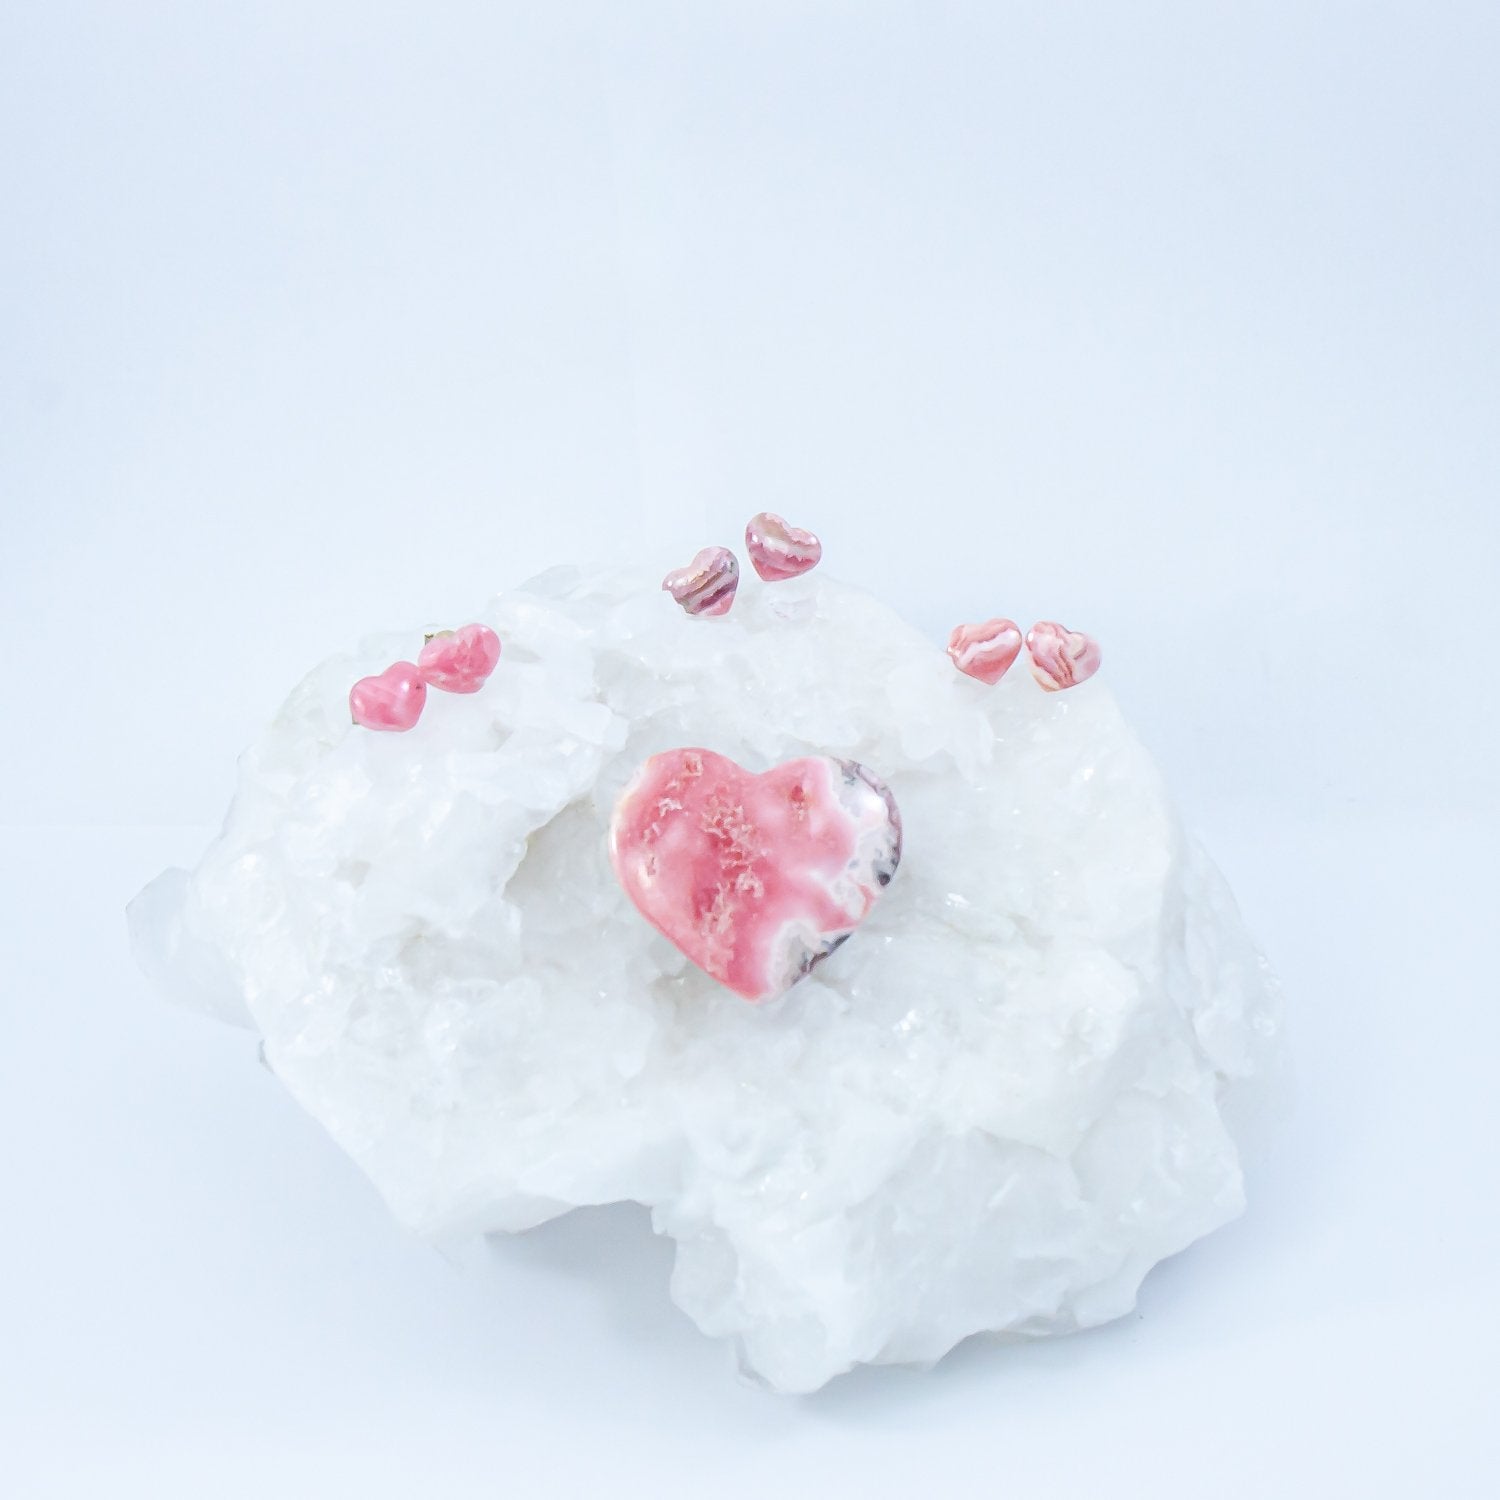 rhodochrosite heart crystal earrings atop a quartz crystal with another rhodochrosite heart stone.